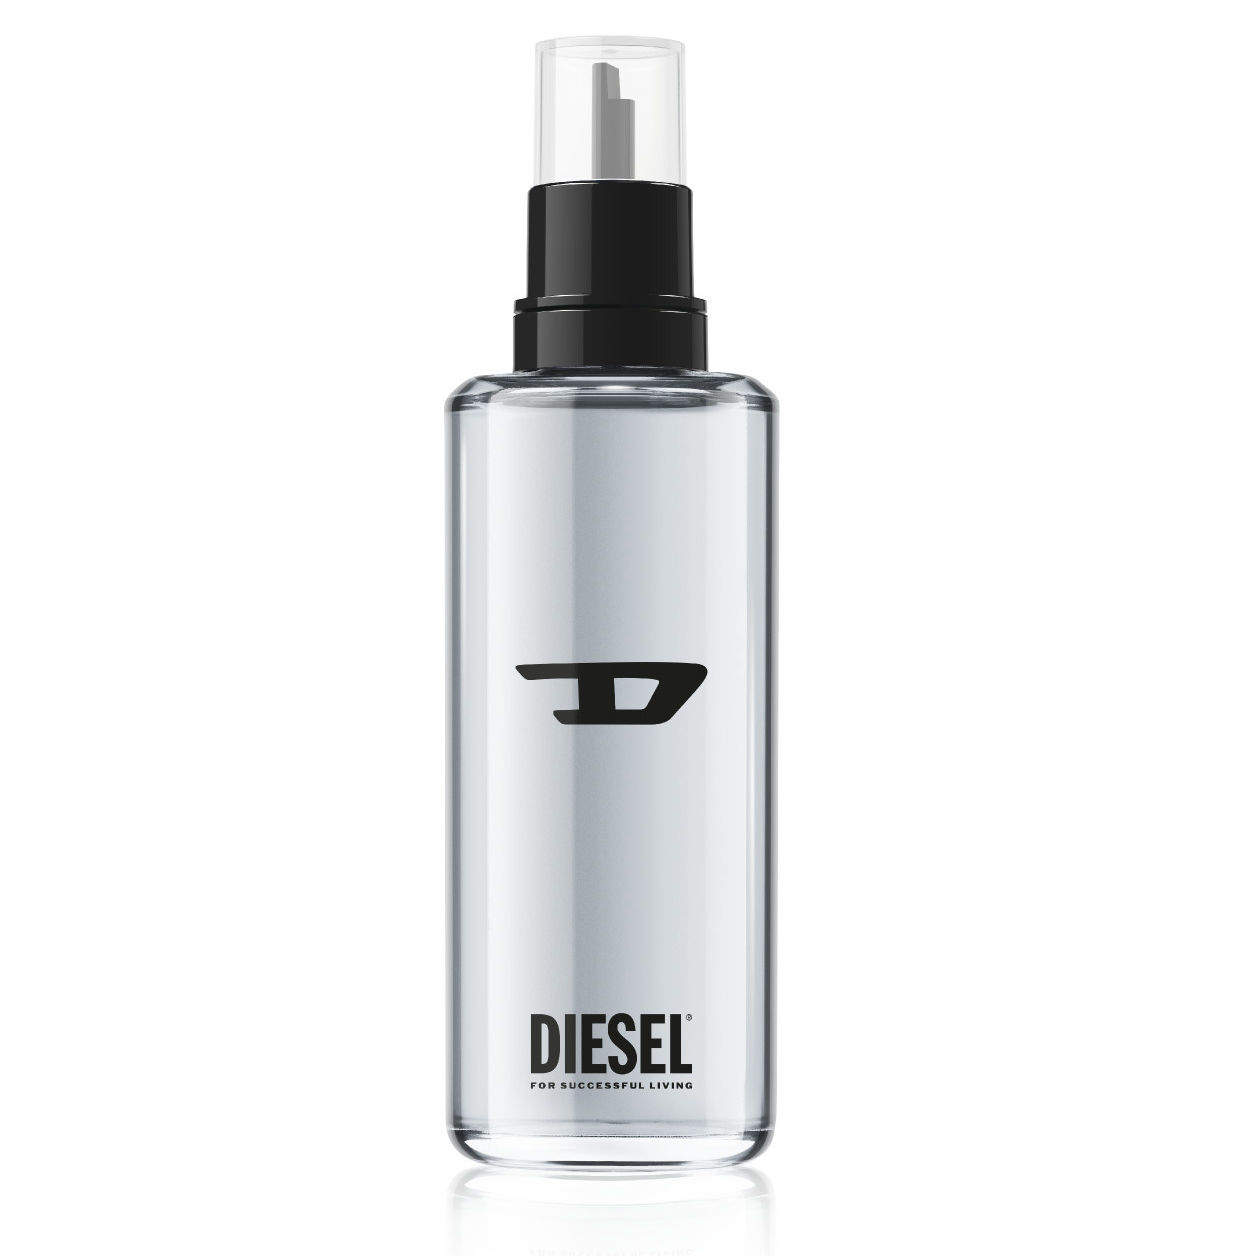 Diesel D by Diesel Eau de toilette navulling 150 ml